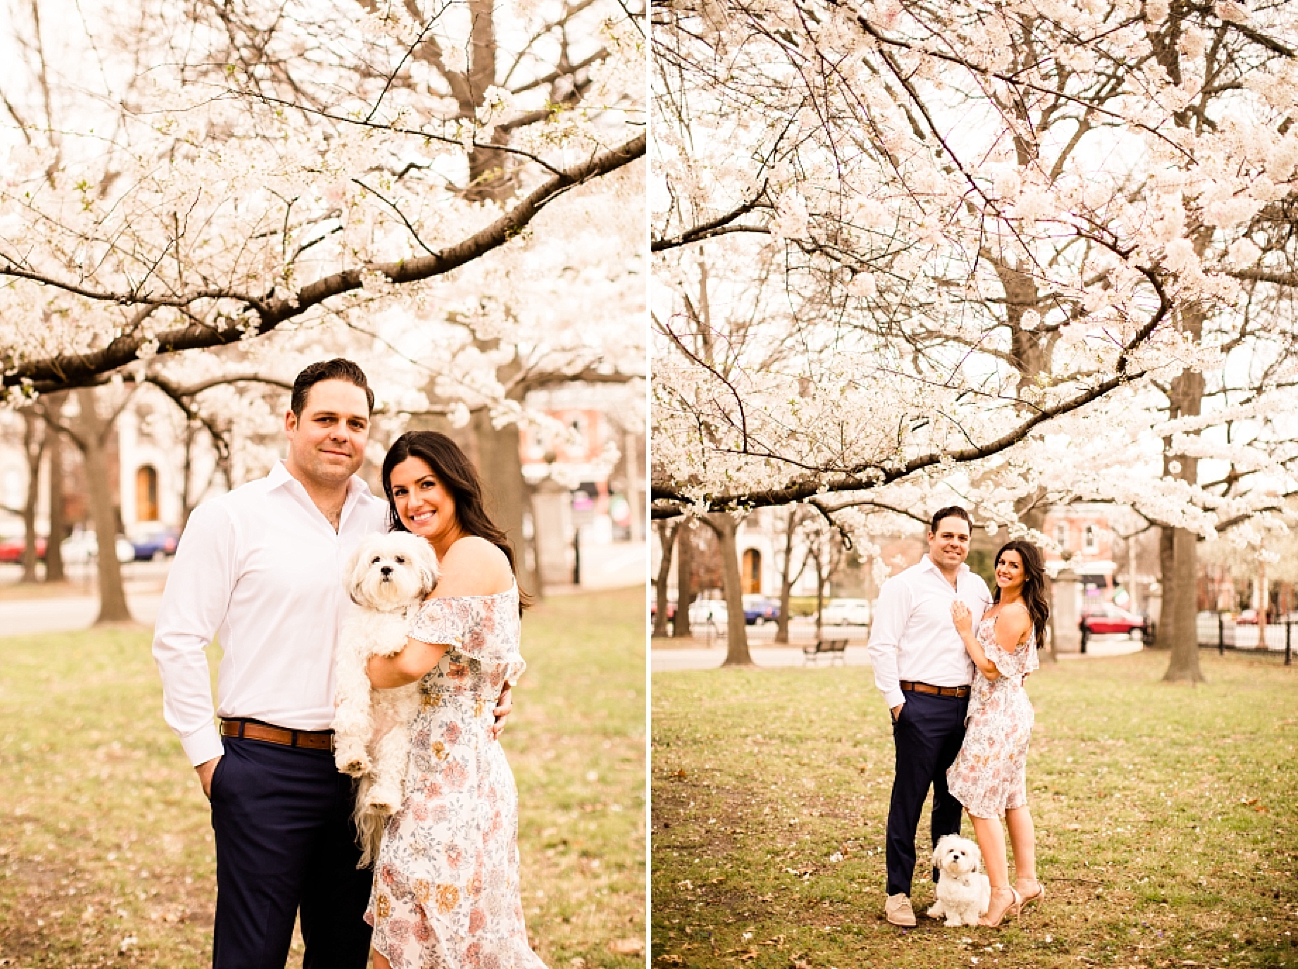 Lafayette Square Park Engagement Photos, Spring Engagement, Floral Dress Engagement Photos